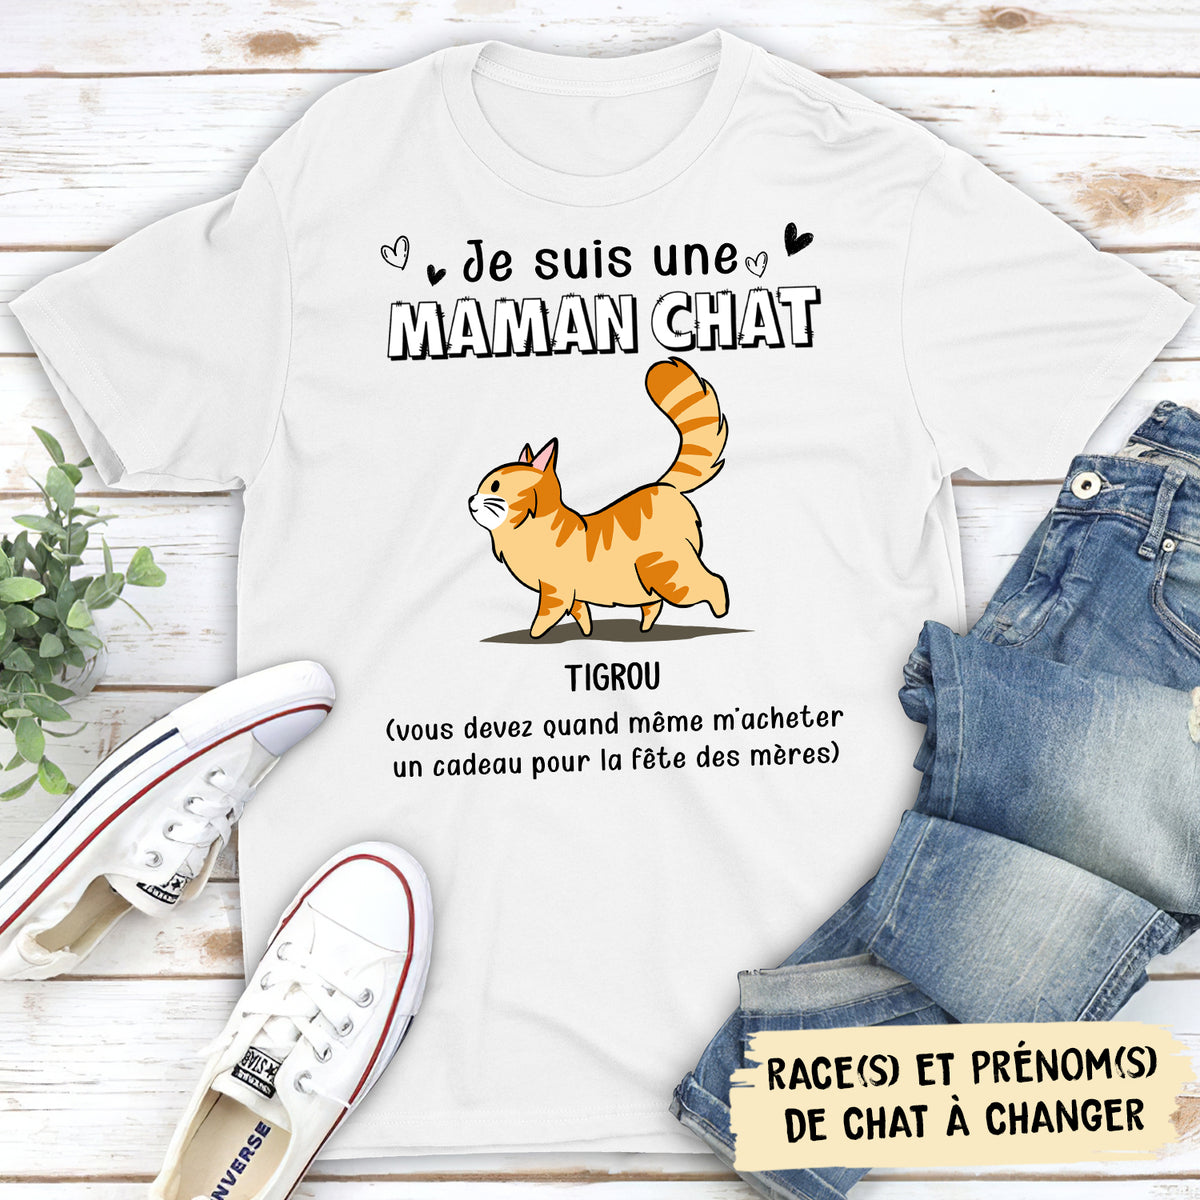 T-shirt Unisex Personnalisé - Cadeau Obligatoire Pour La Fête Des Mères